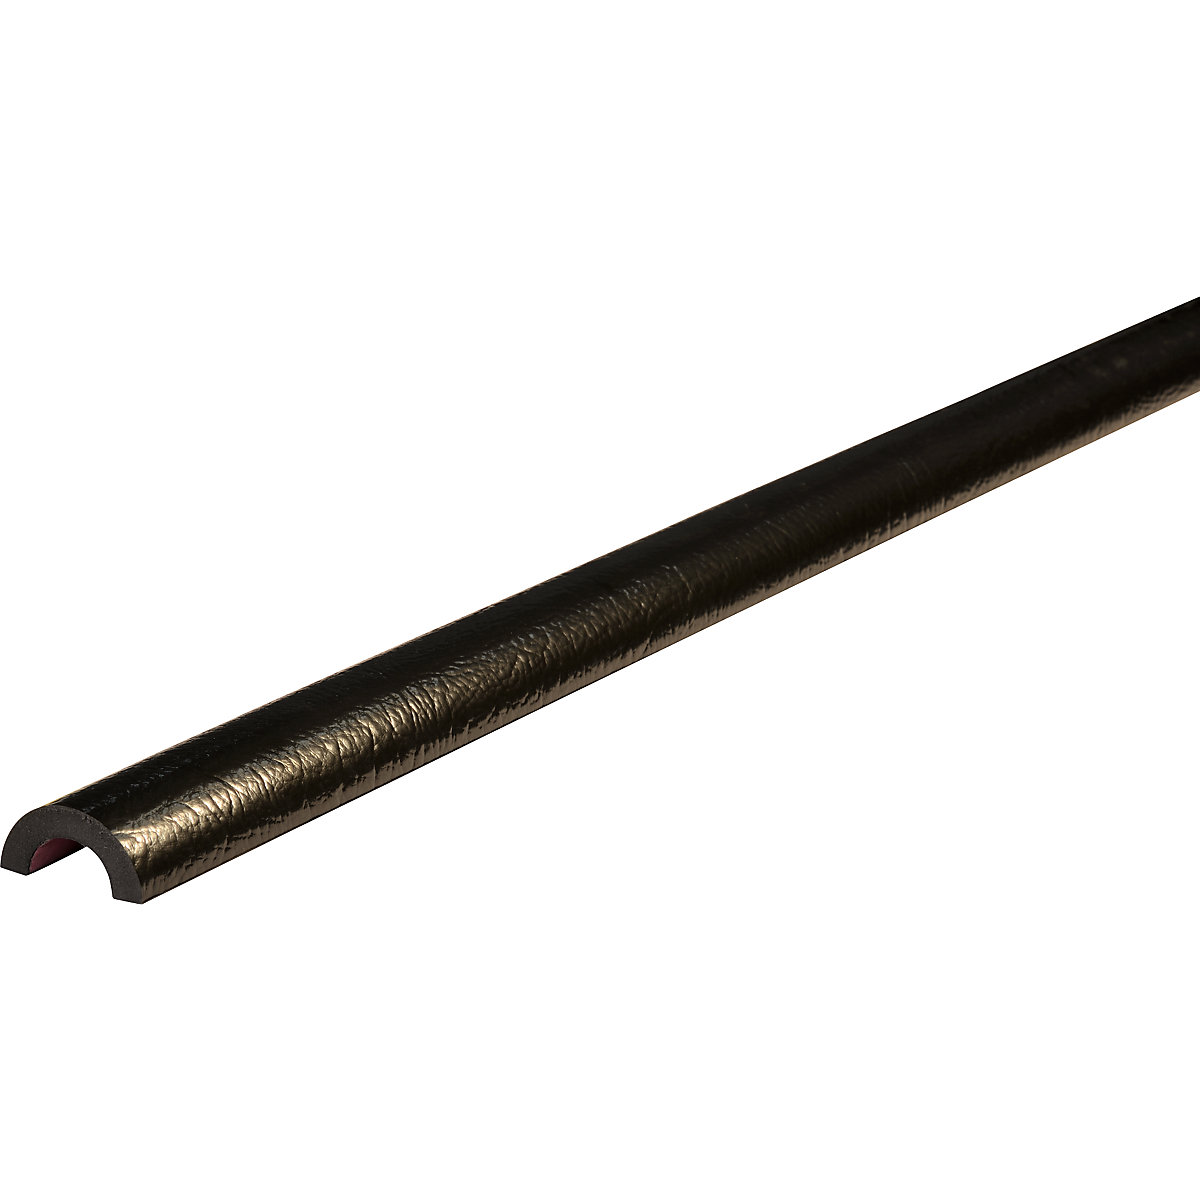 Protection des tuyaux Knuffi® – SHG, type R30, 1 rouleau de 50 m, noir